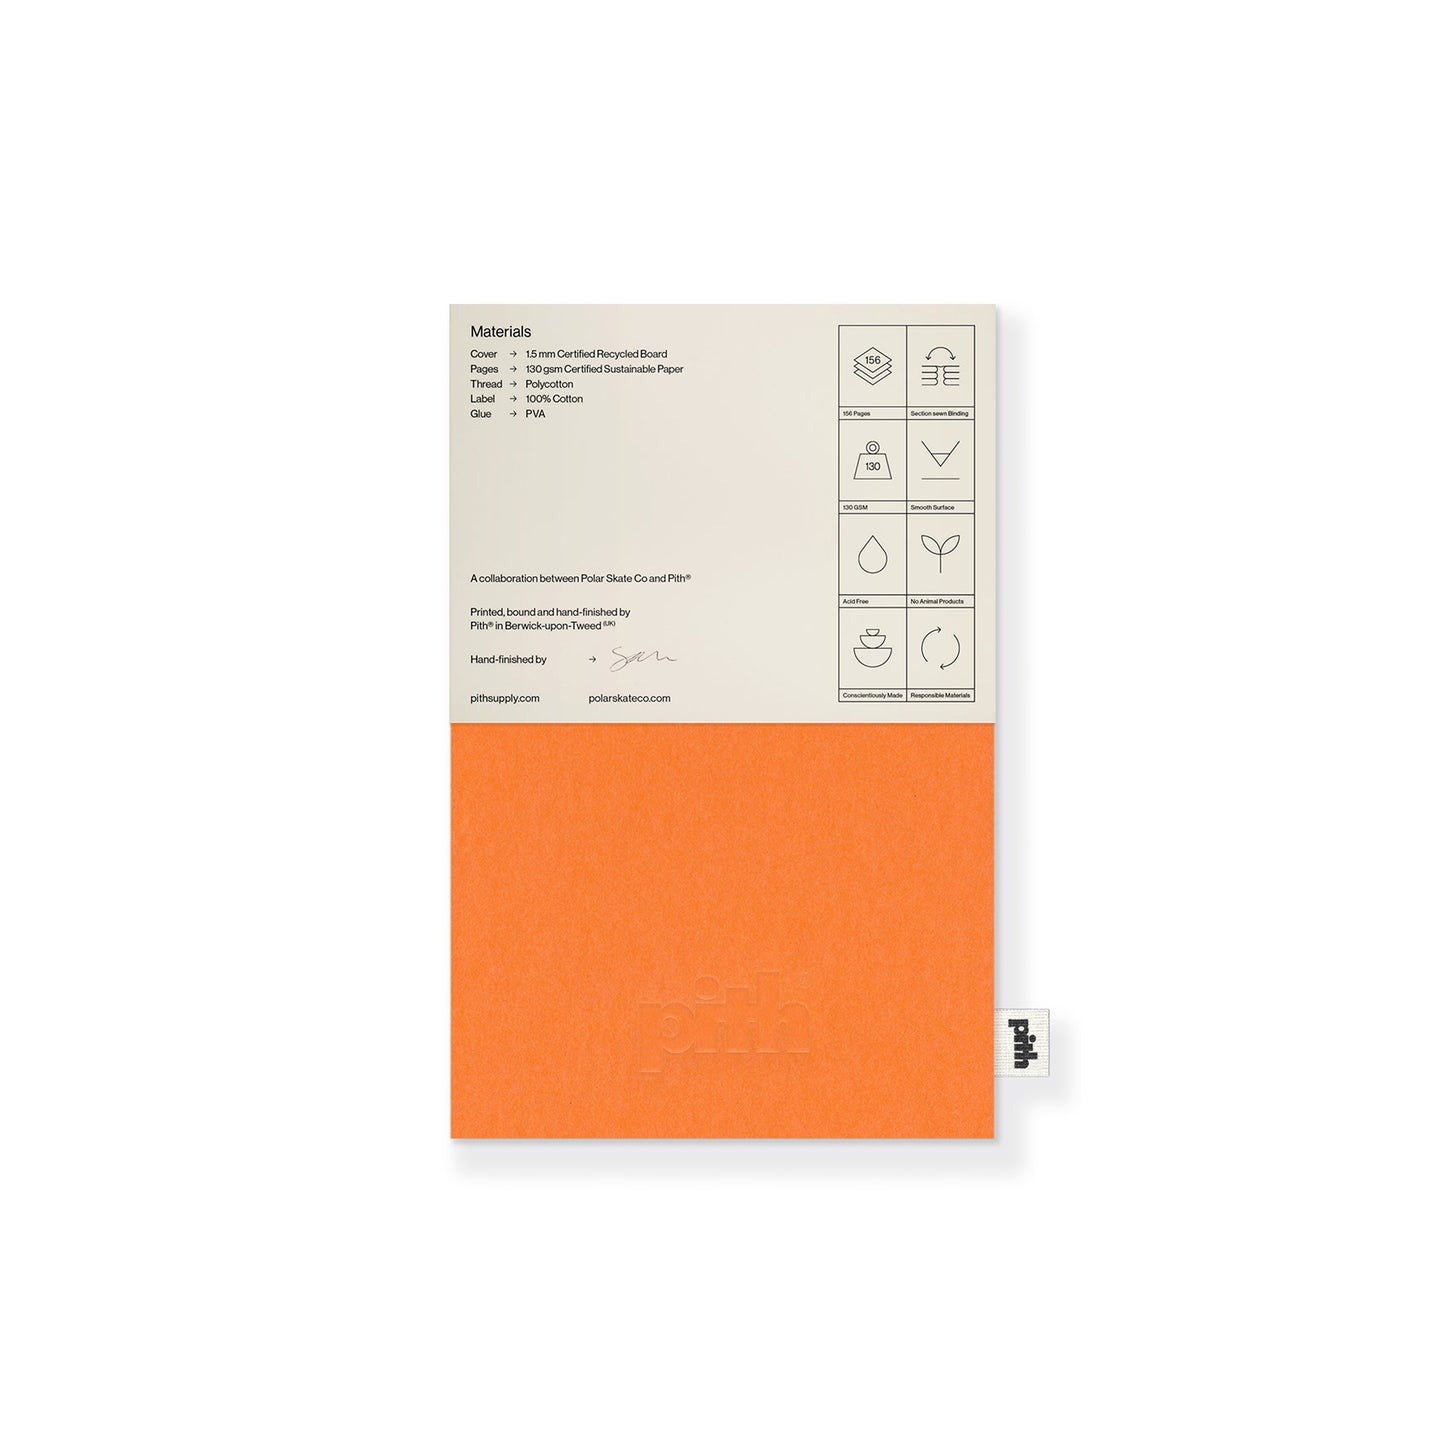 Polar Deck Book: Orange